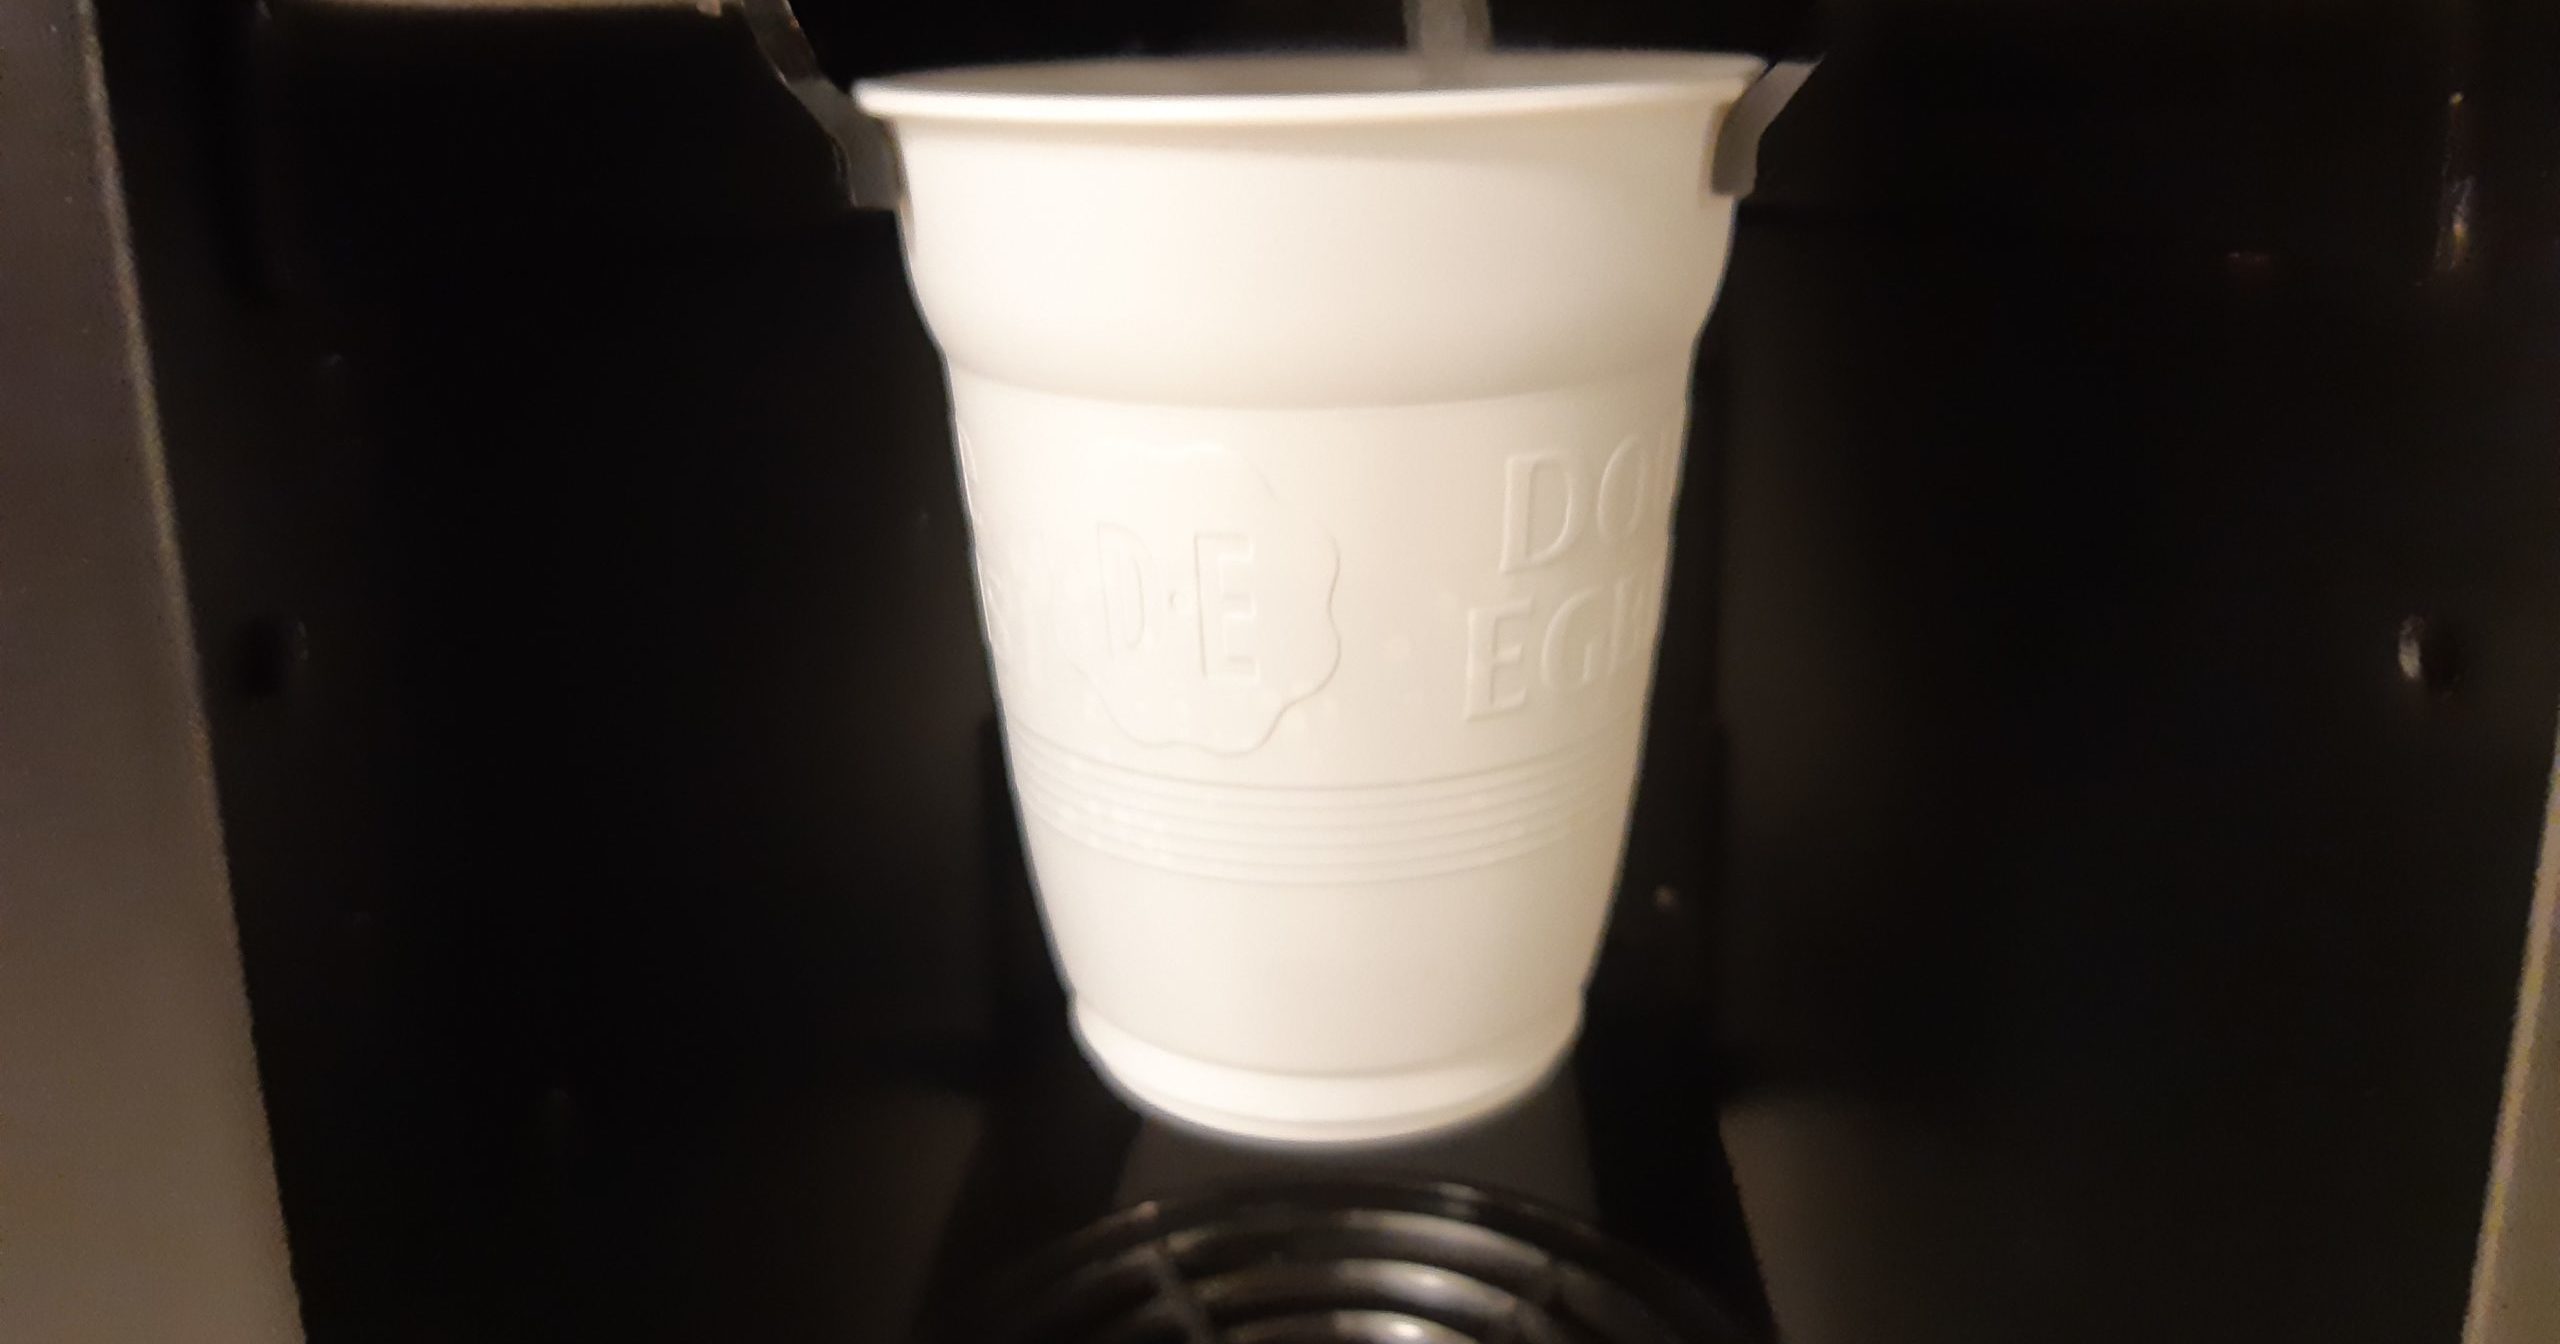 Nieuwe koffieautomaten: geen plastic bekertjes, wél havermelk